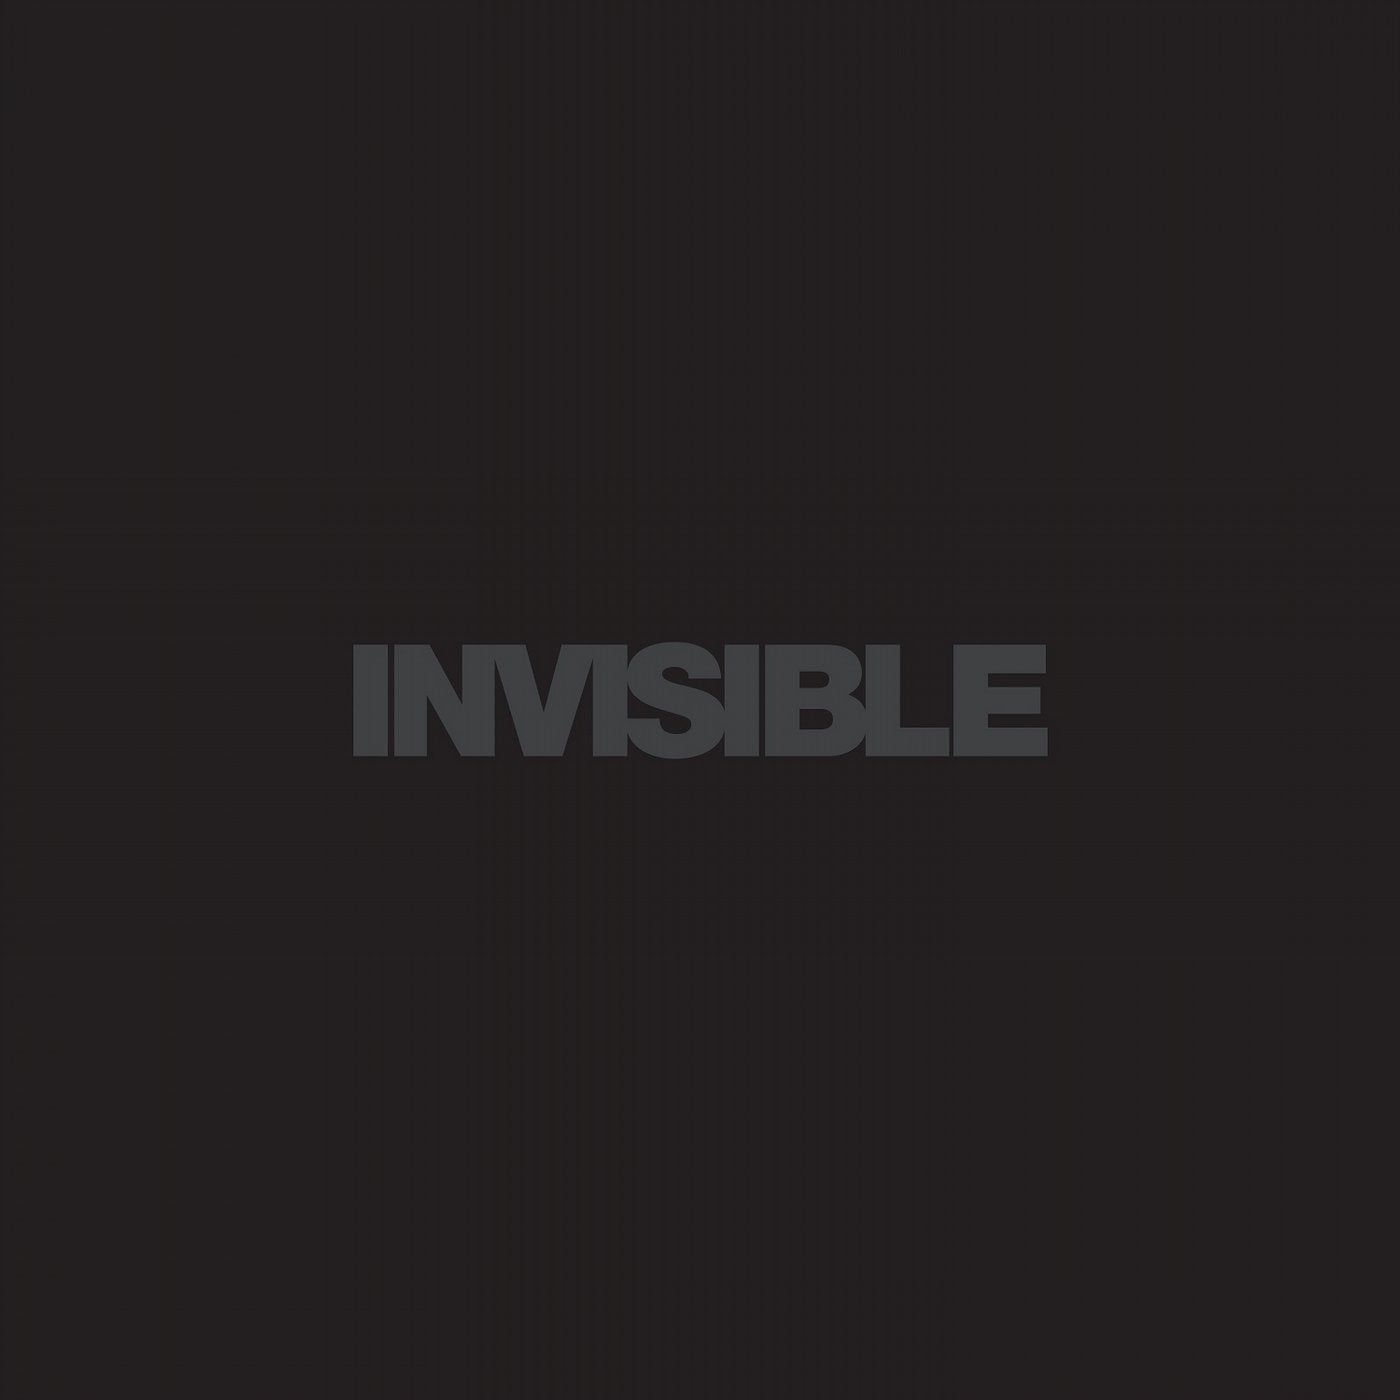 Invisible 025